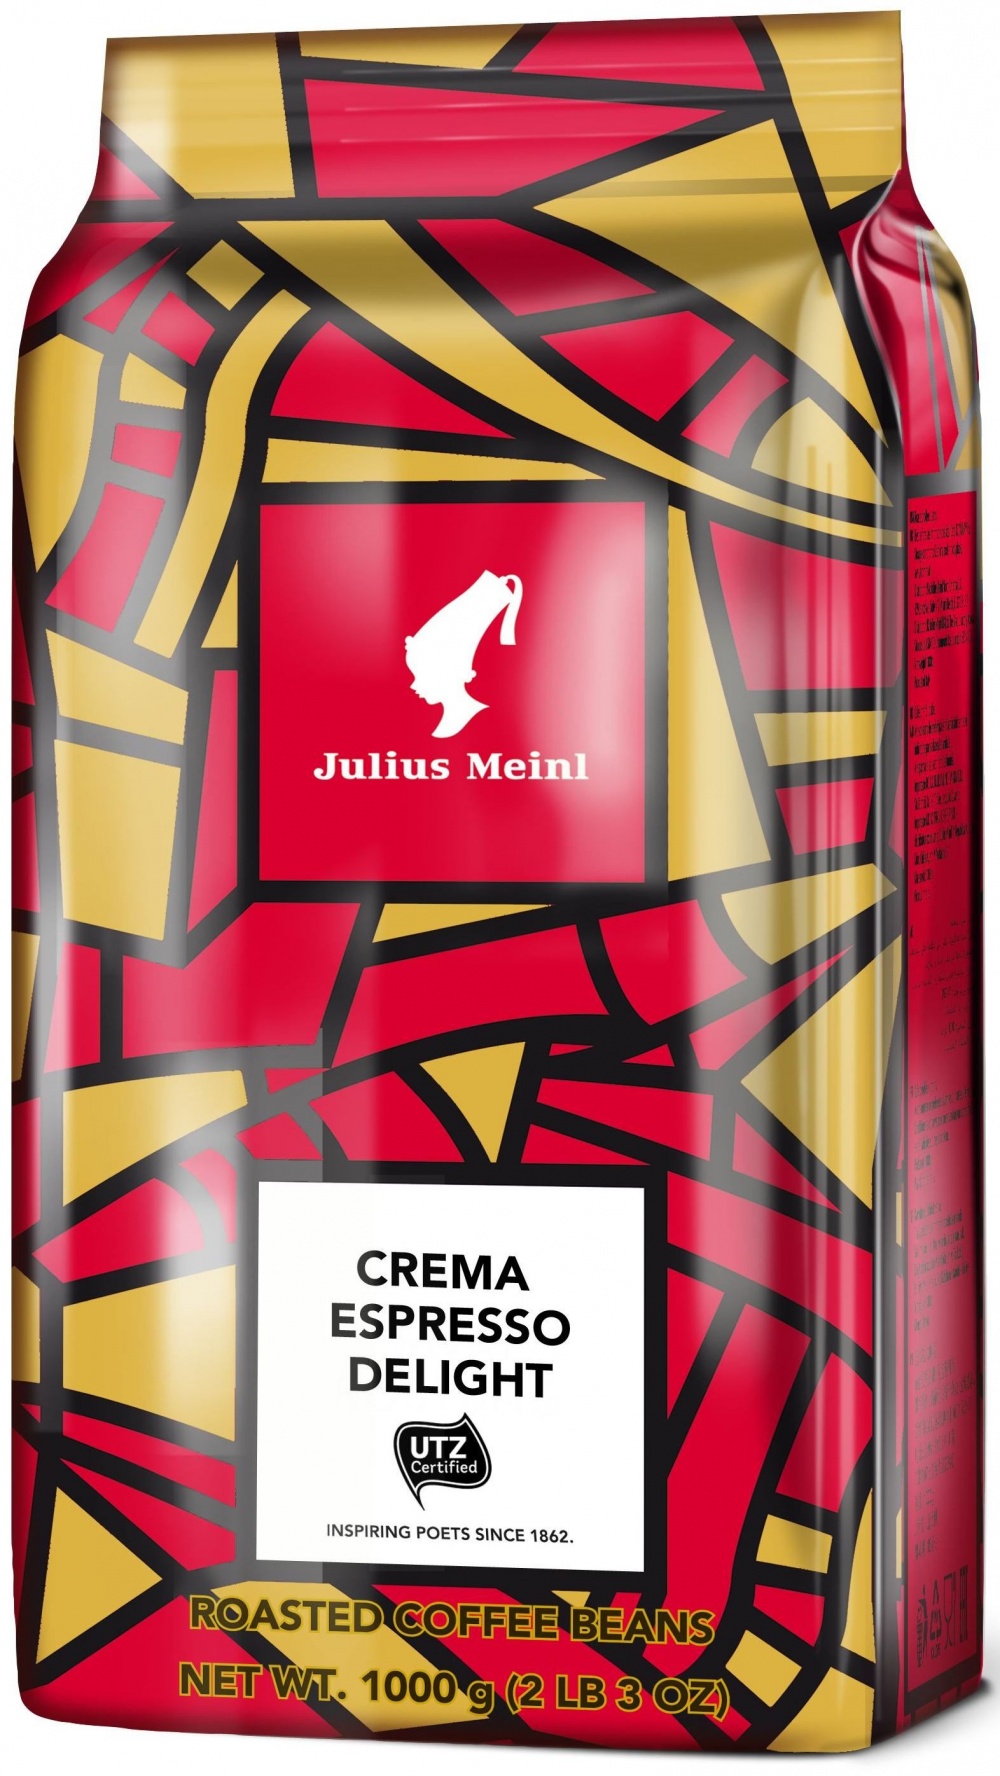 Джулиус майнл. Кофе зерновой Julius Meinl crema Espresso Delight. Кофе Julius Meinl Elite Espresso. Кофе Julius Meinl Premium Breakfast. Джулиус Майнл кофе в зернах 1 кг.